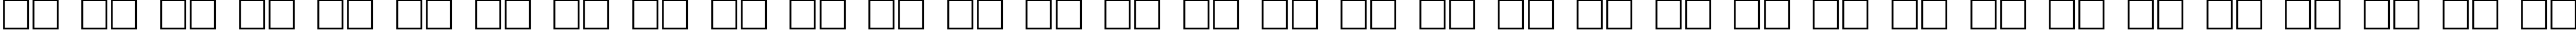 Пример написания русского алфавита шрифтом GalsLight